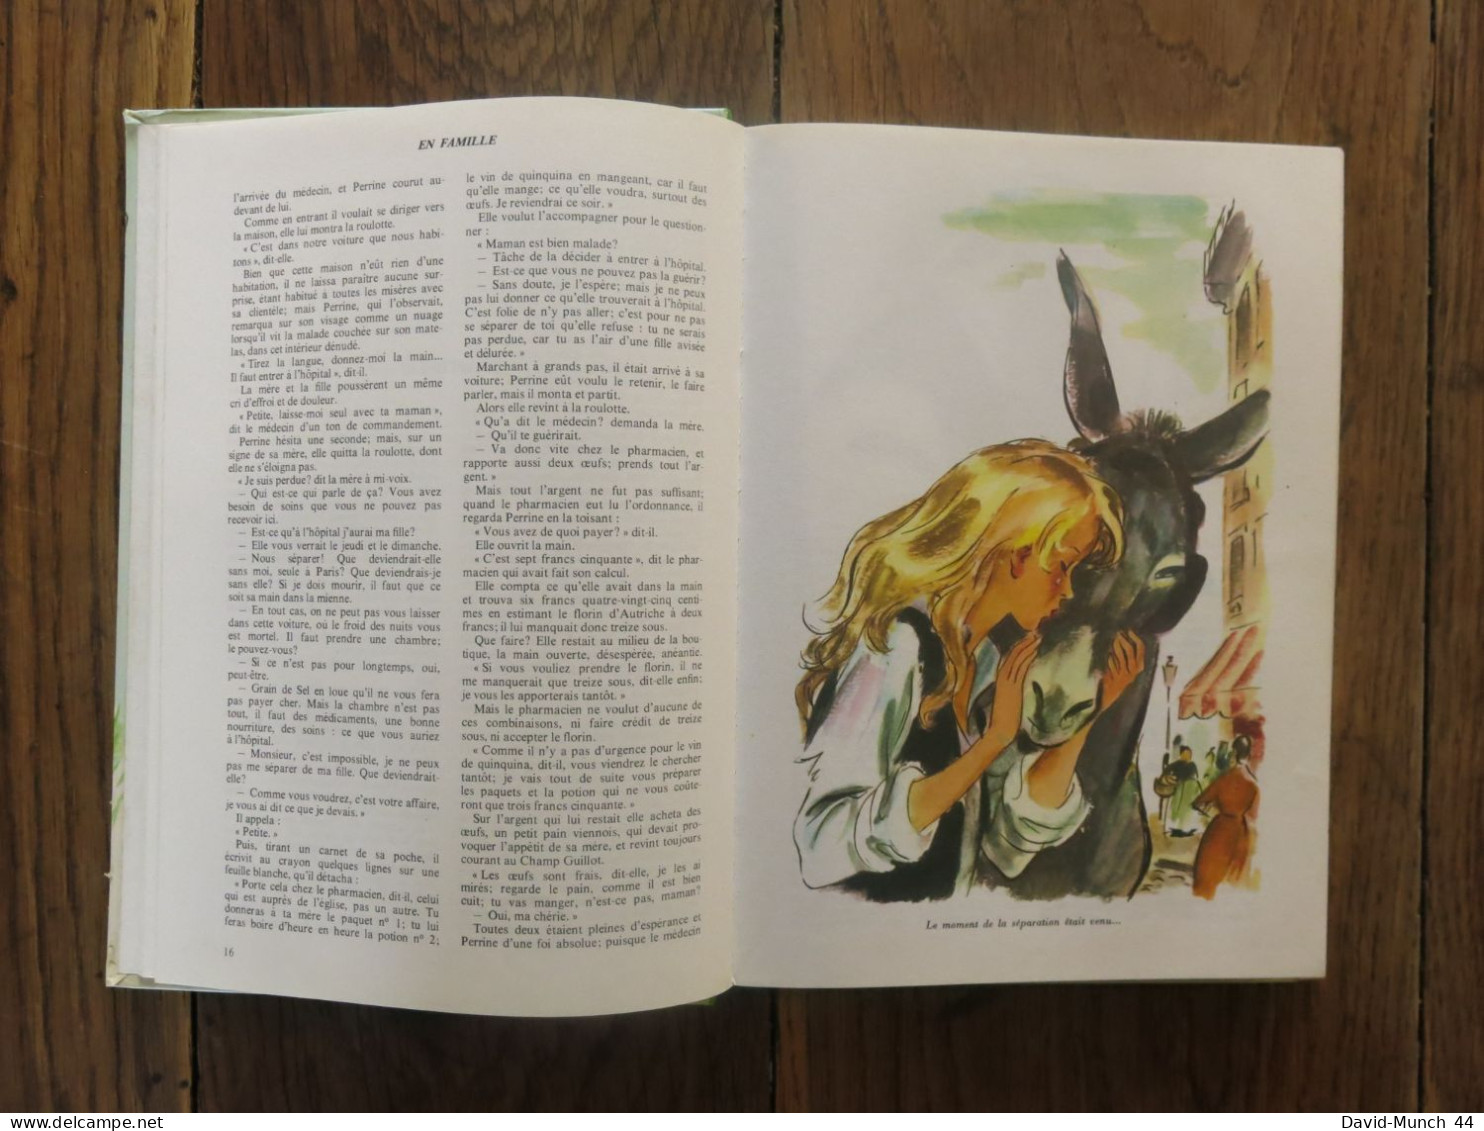 En Famille De Hector Malot, Illustrations De Albert Chazelle. Hachette, Collection La Galaxie. 1980 - Hachette